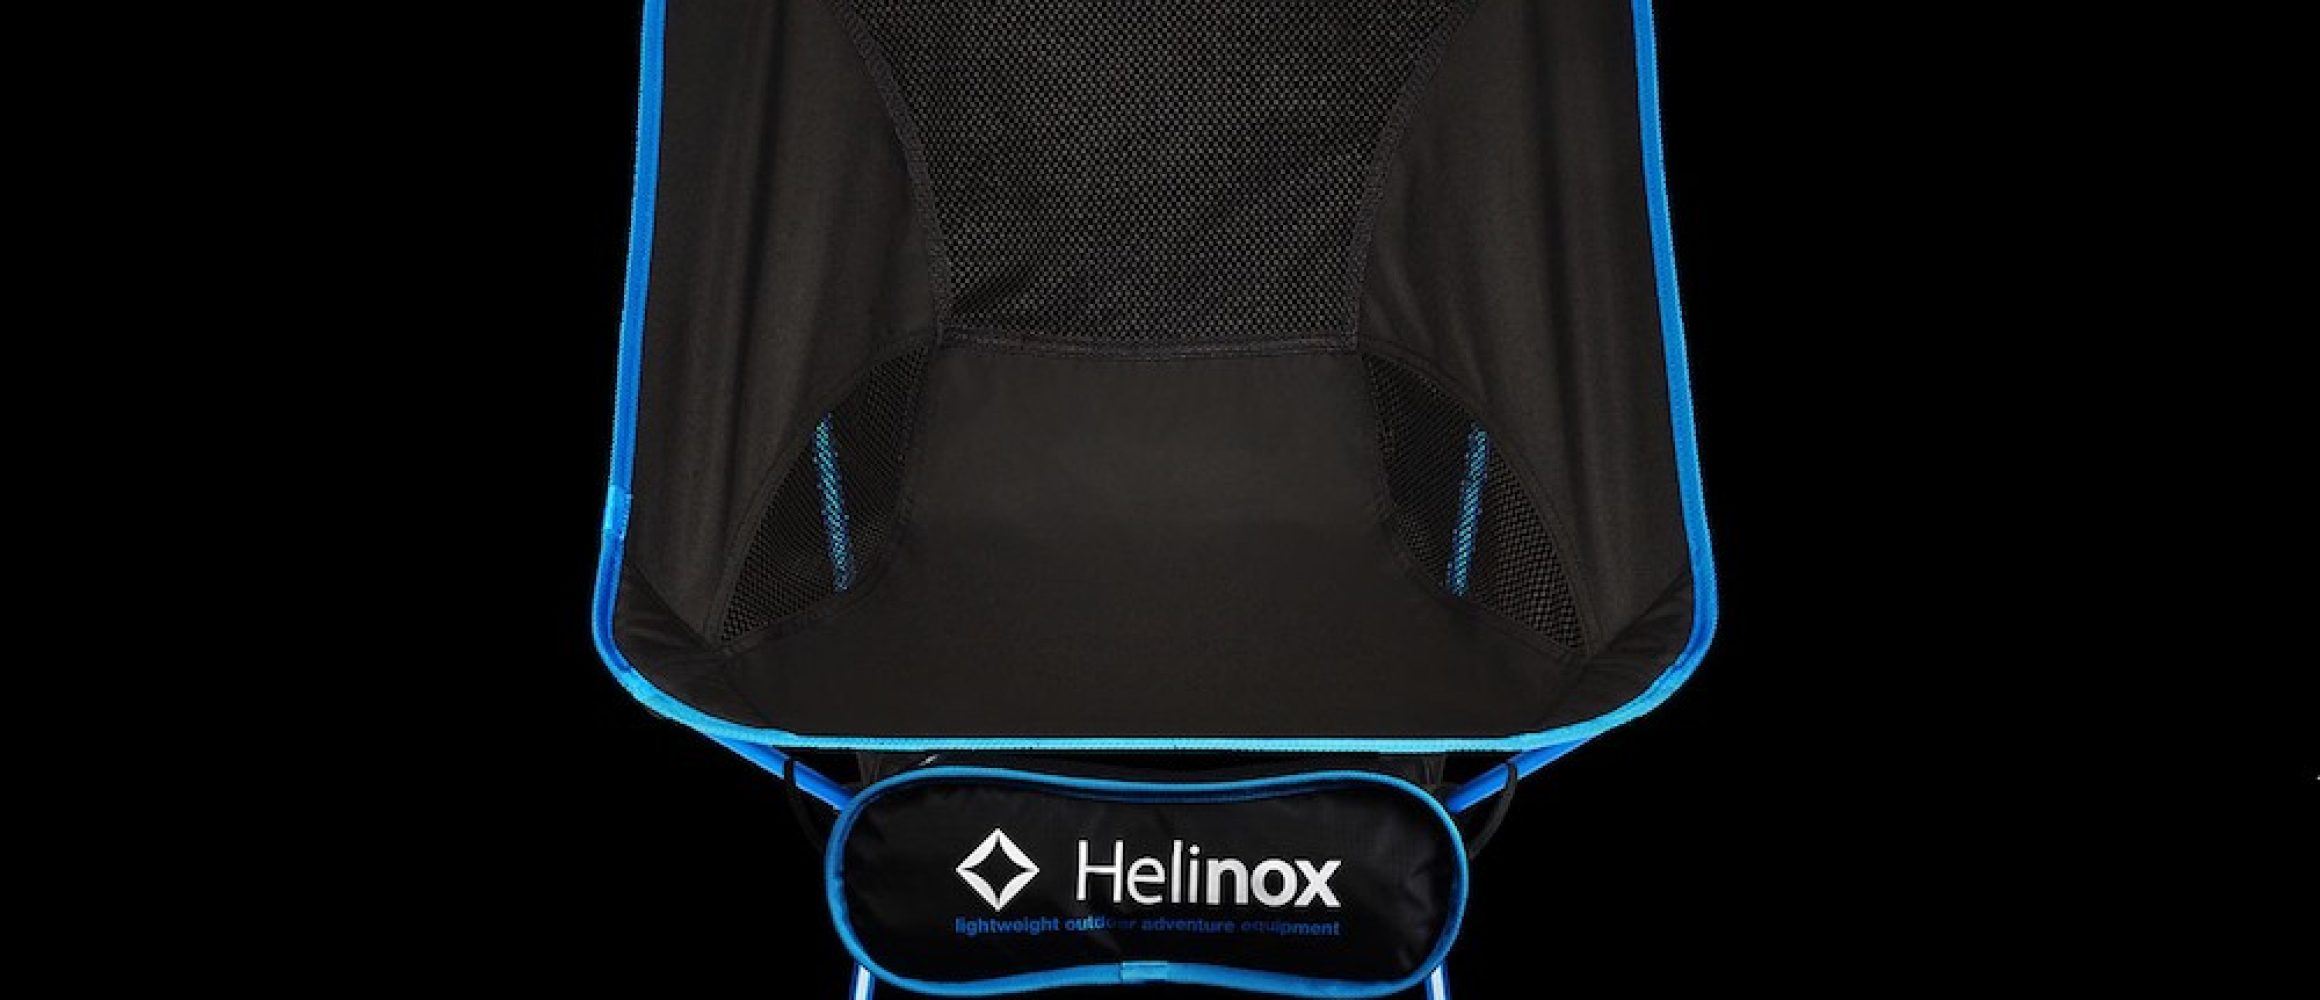 Helinox ヘリノックス 10周年記念 OD缶カバー 250サイズ